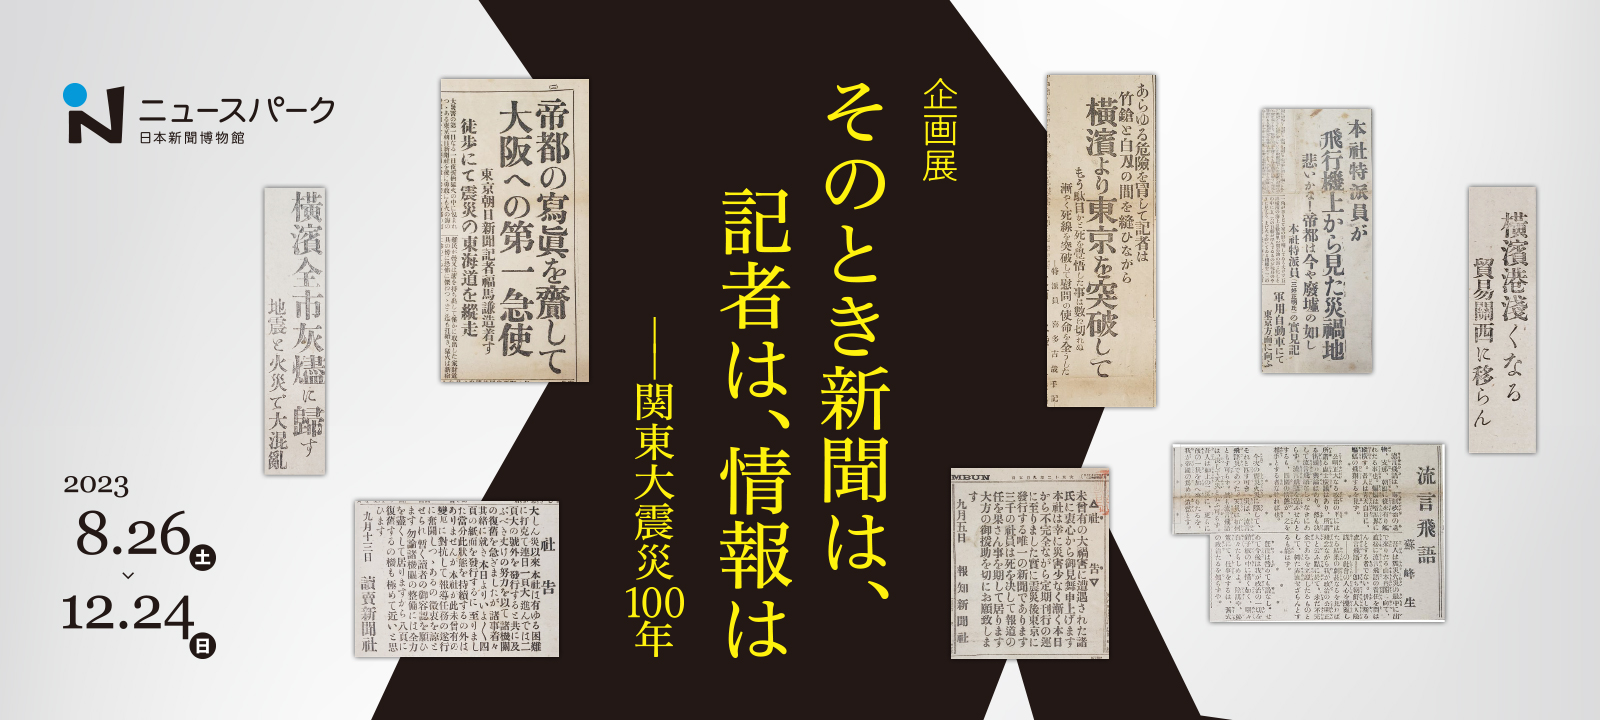 企画展「そのとき新聞は、記者は、情報は――関東大震災100年」